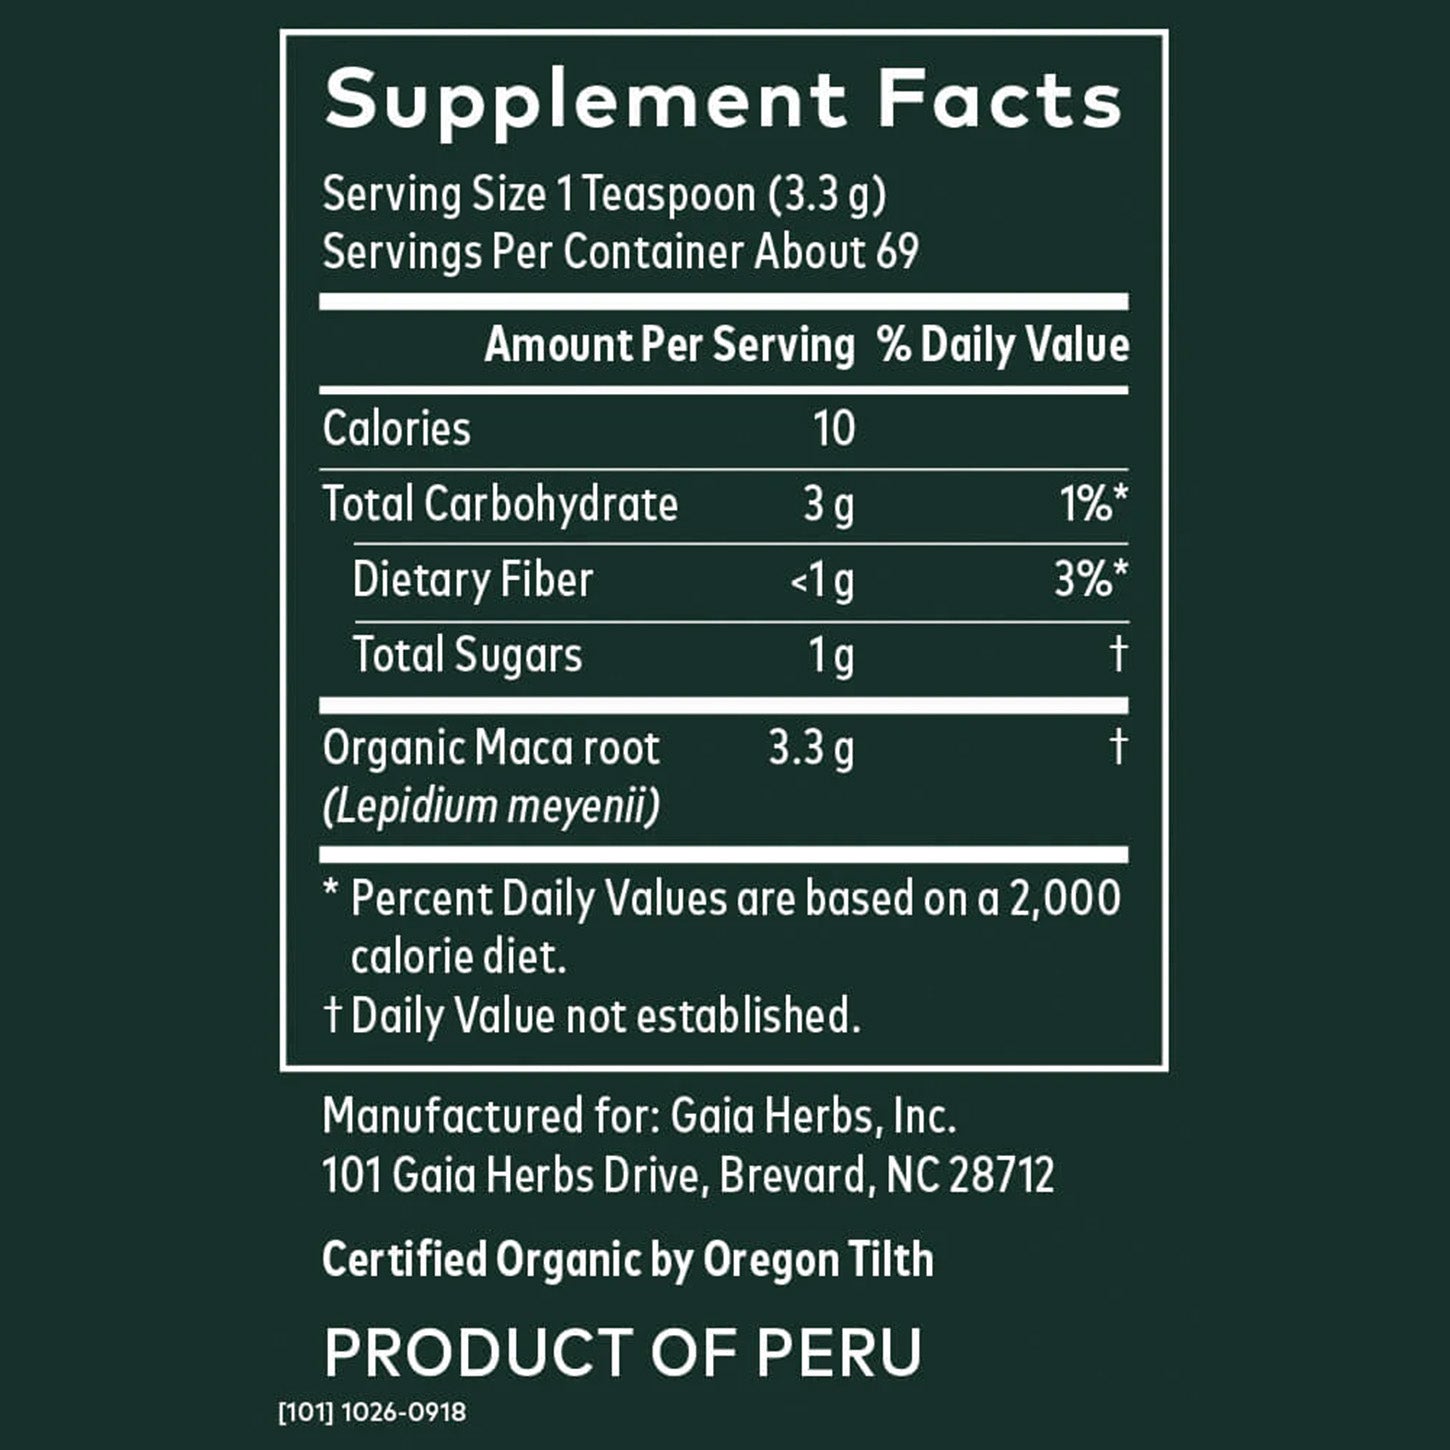 Gaia Herbs Maca Powder: Potencia tu Vitalidad Naturalmente | ProHealth Shop [Panamá]